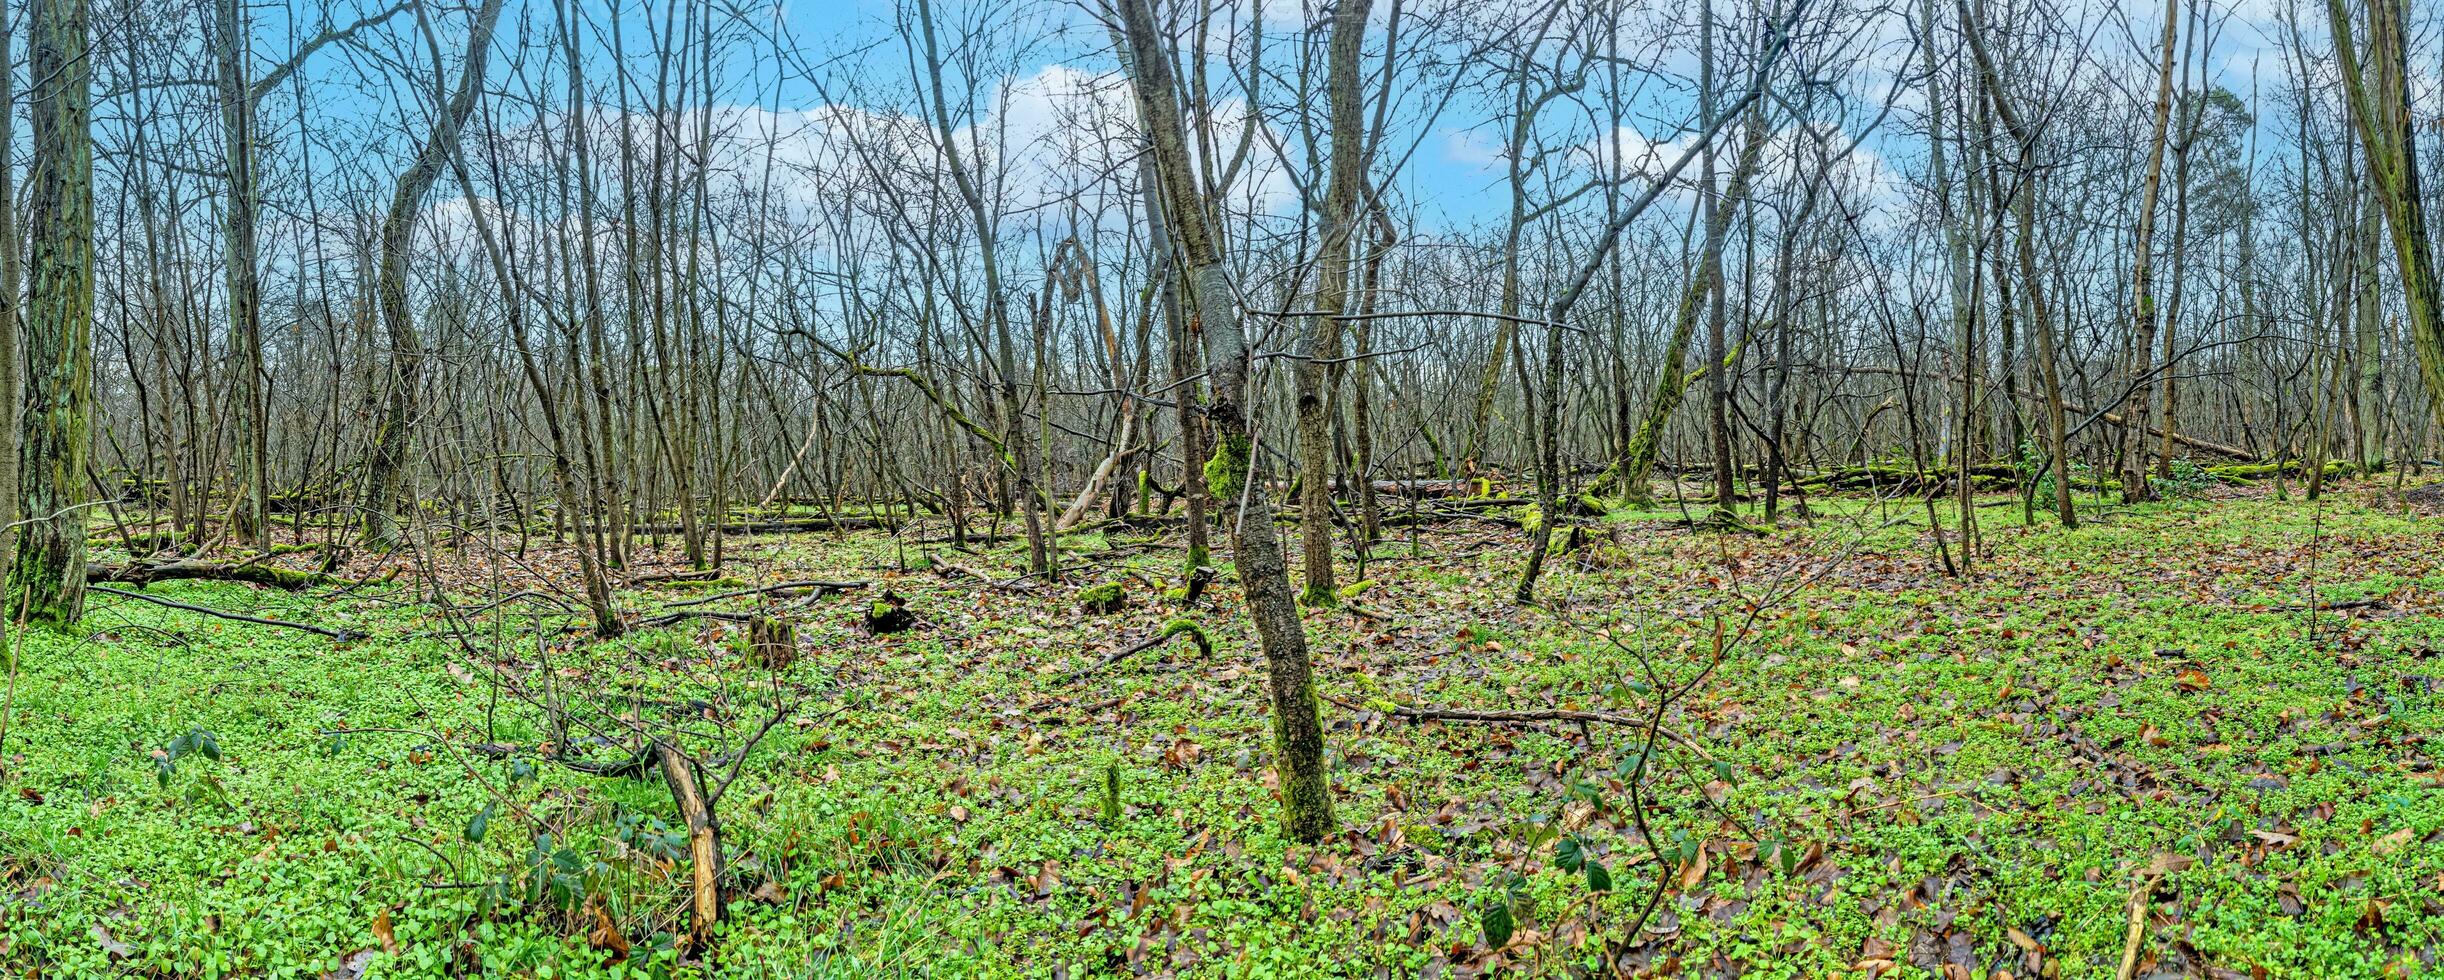 panoramique image dans une nu forêt avec vert sol végétation photo